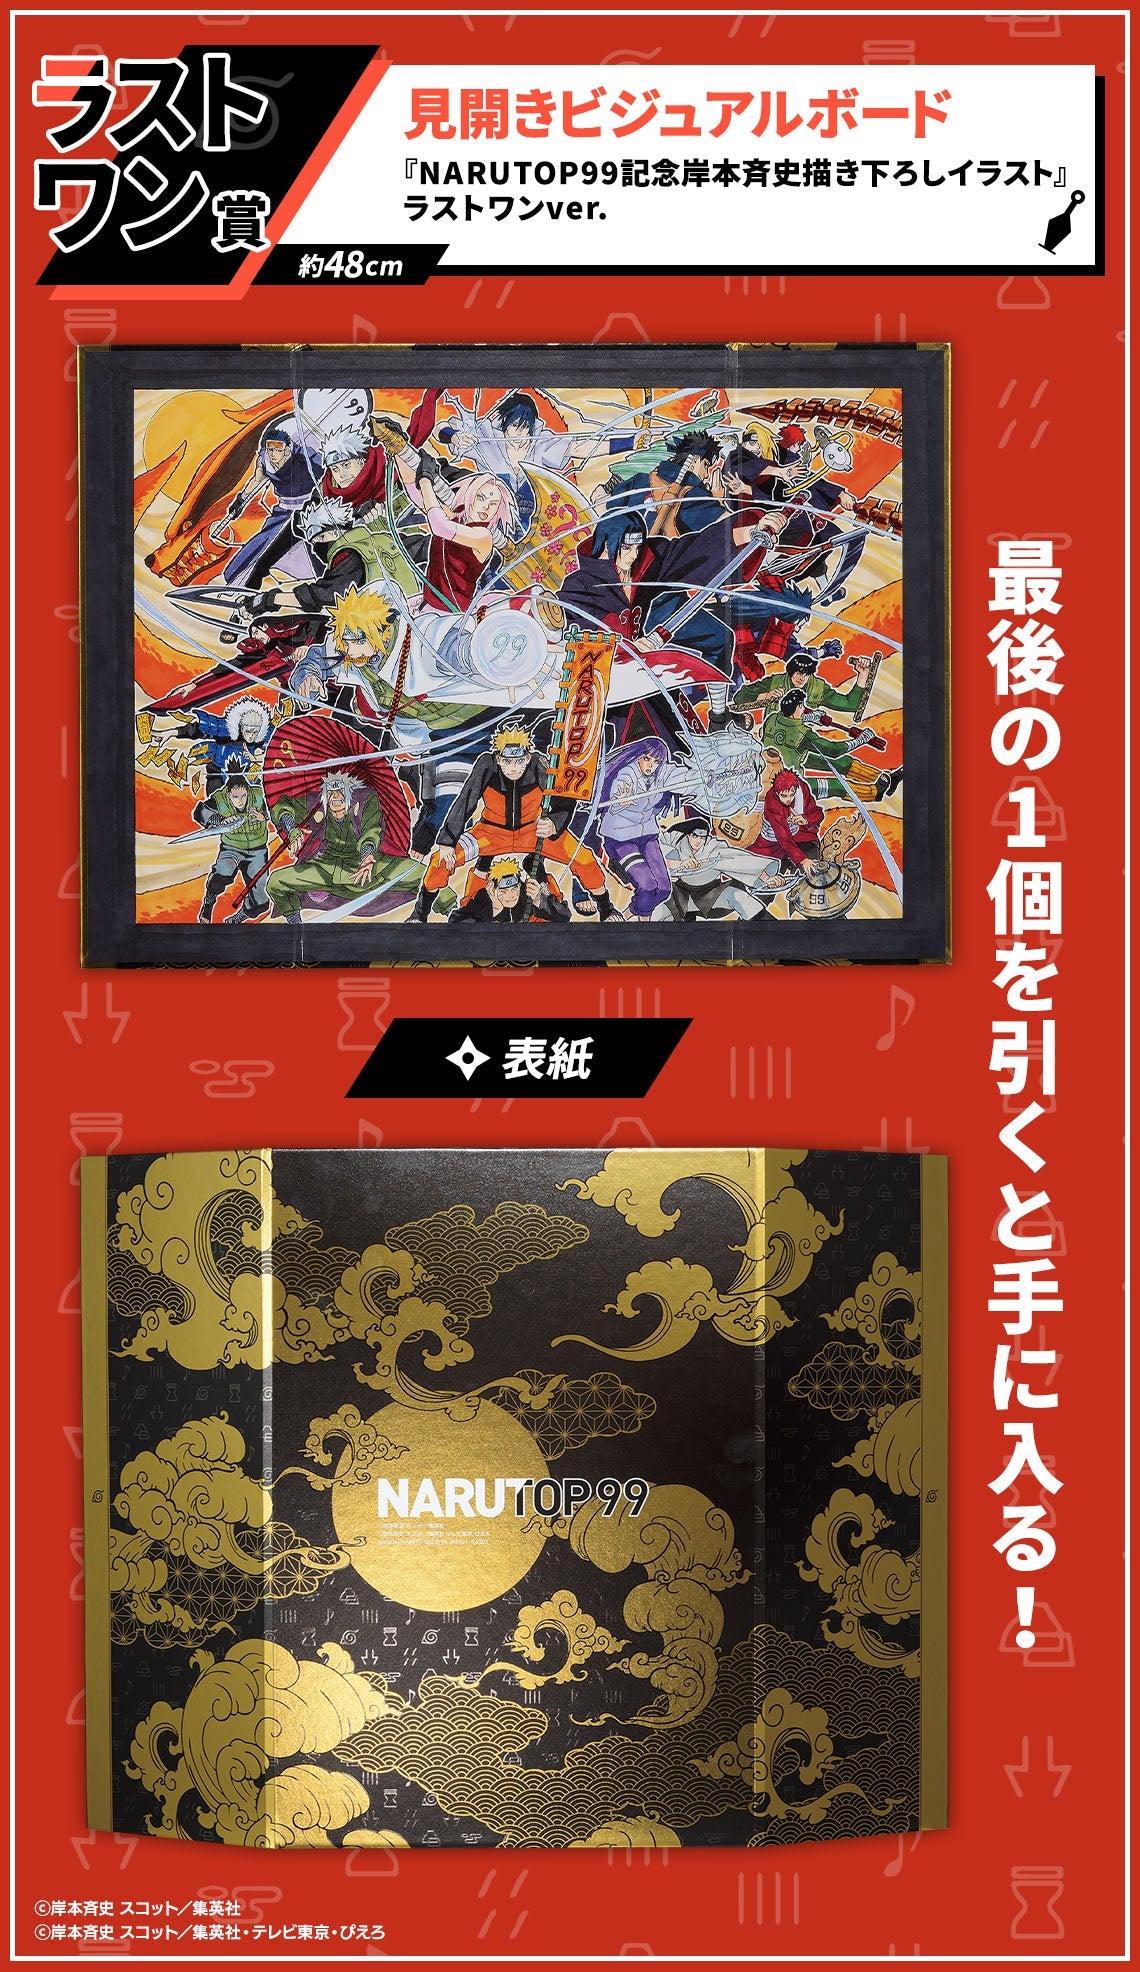 Ichiban Kuji NarutoP99-Bandai-Ace Cards &amp; Collectibles